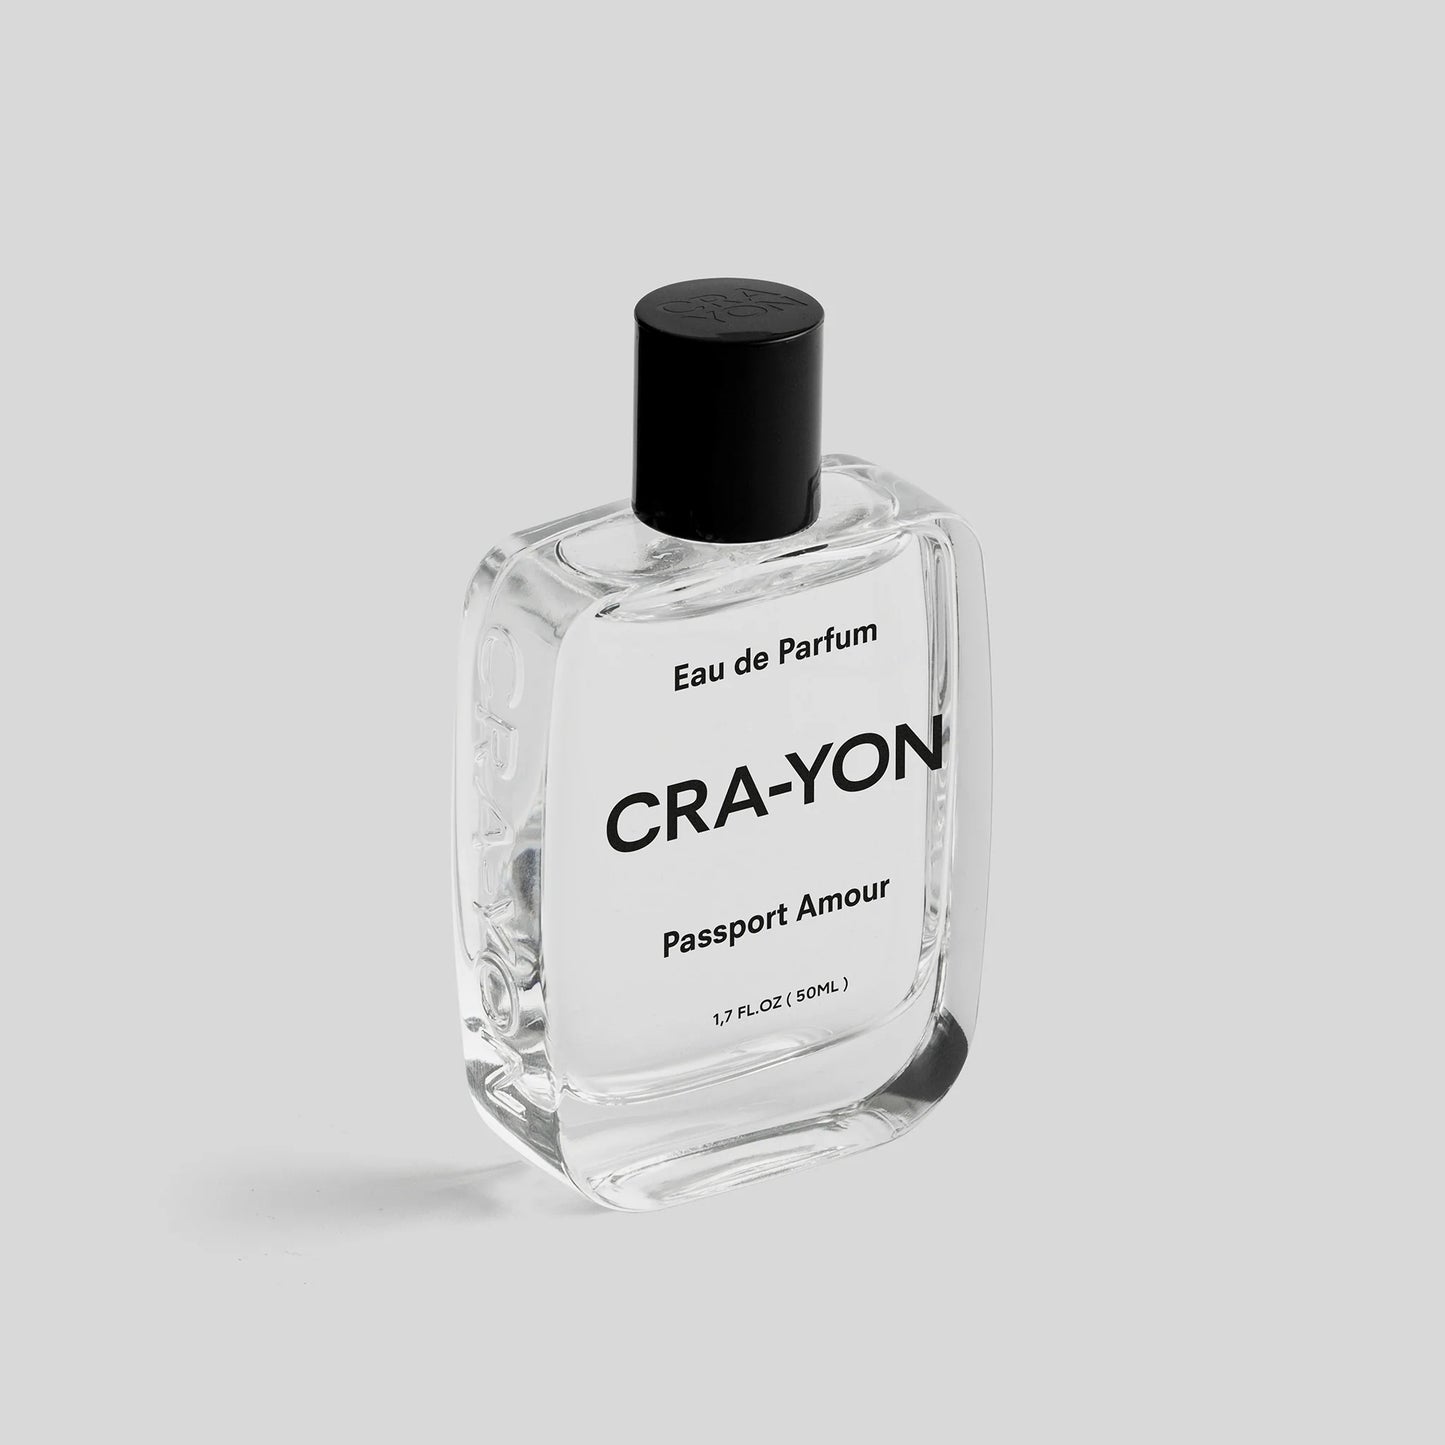 CRA-YON Passport Amour 50ml Eau De Parfum